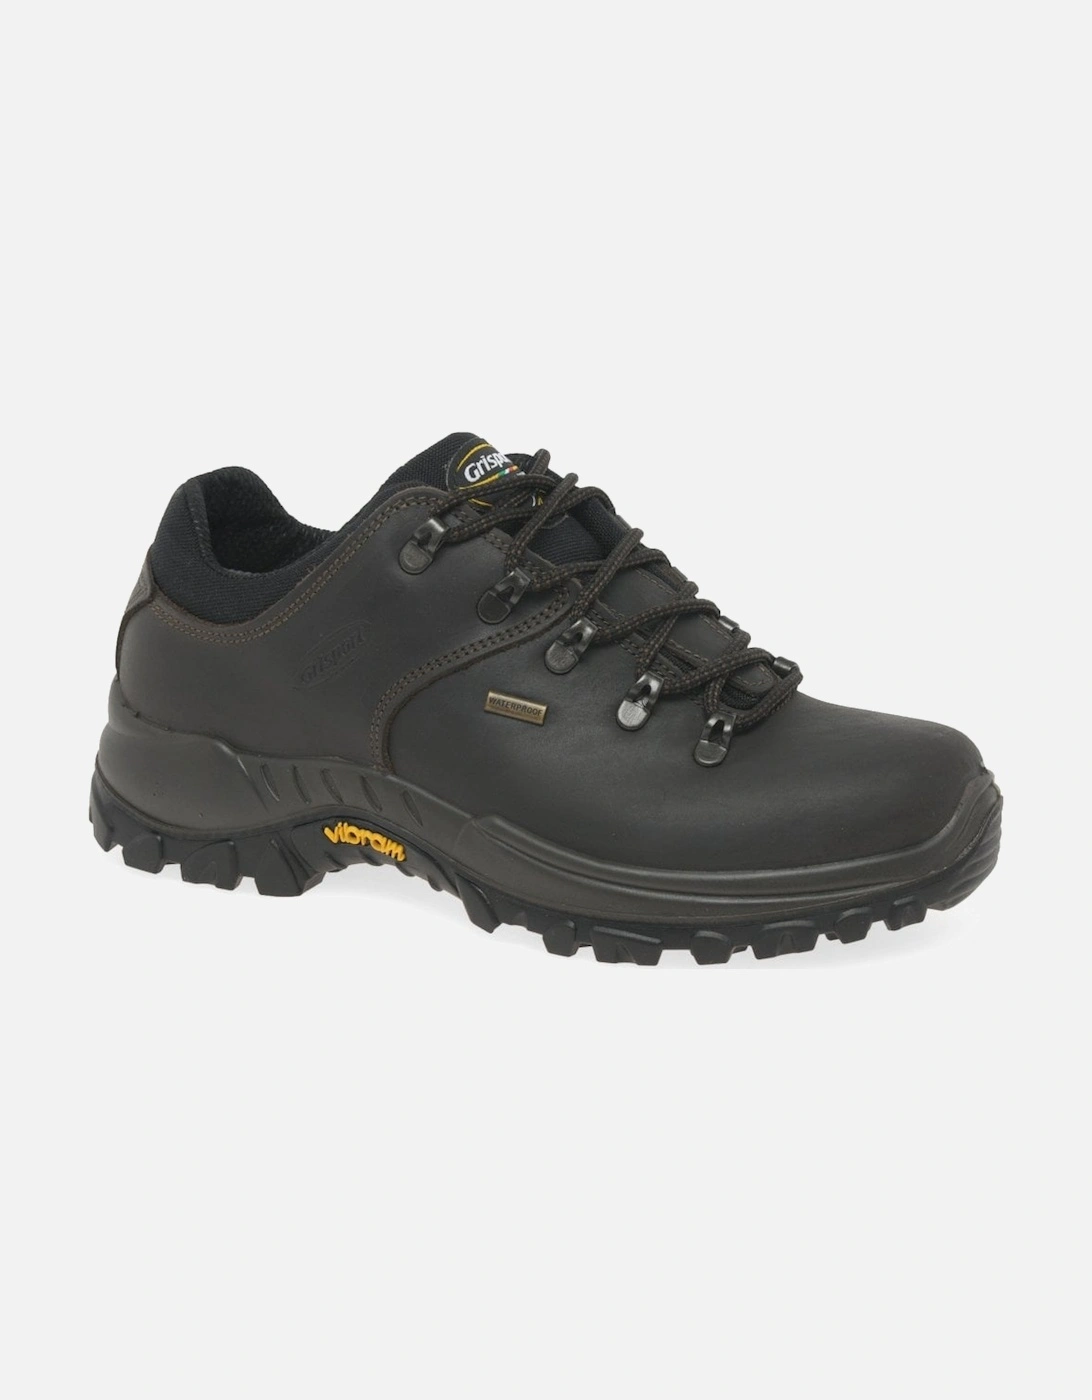 Dartmoor Mens Walking Shoes, 8 of 7